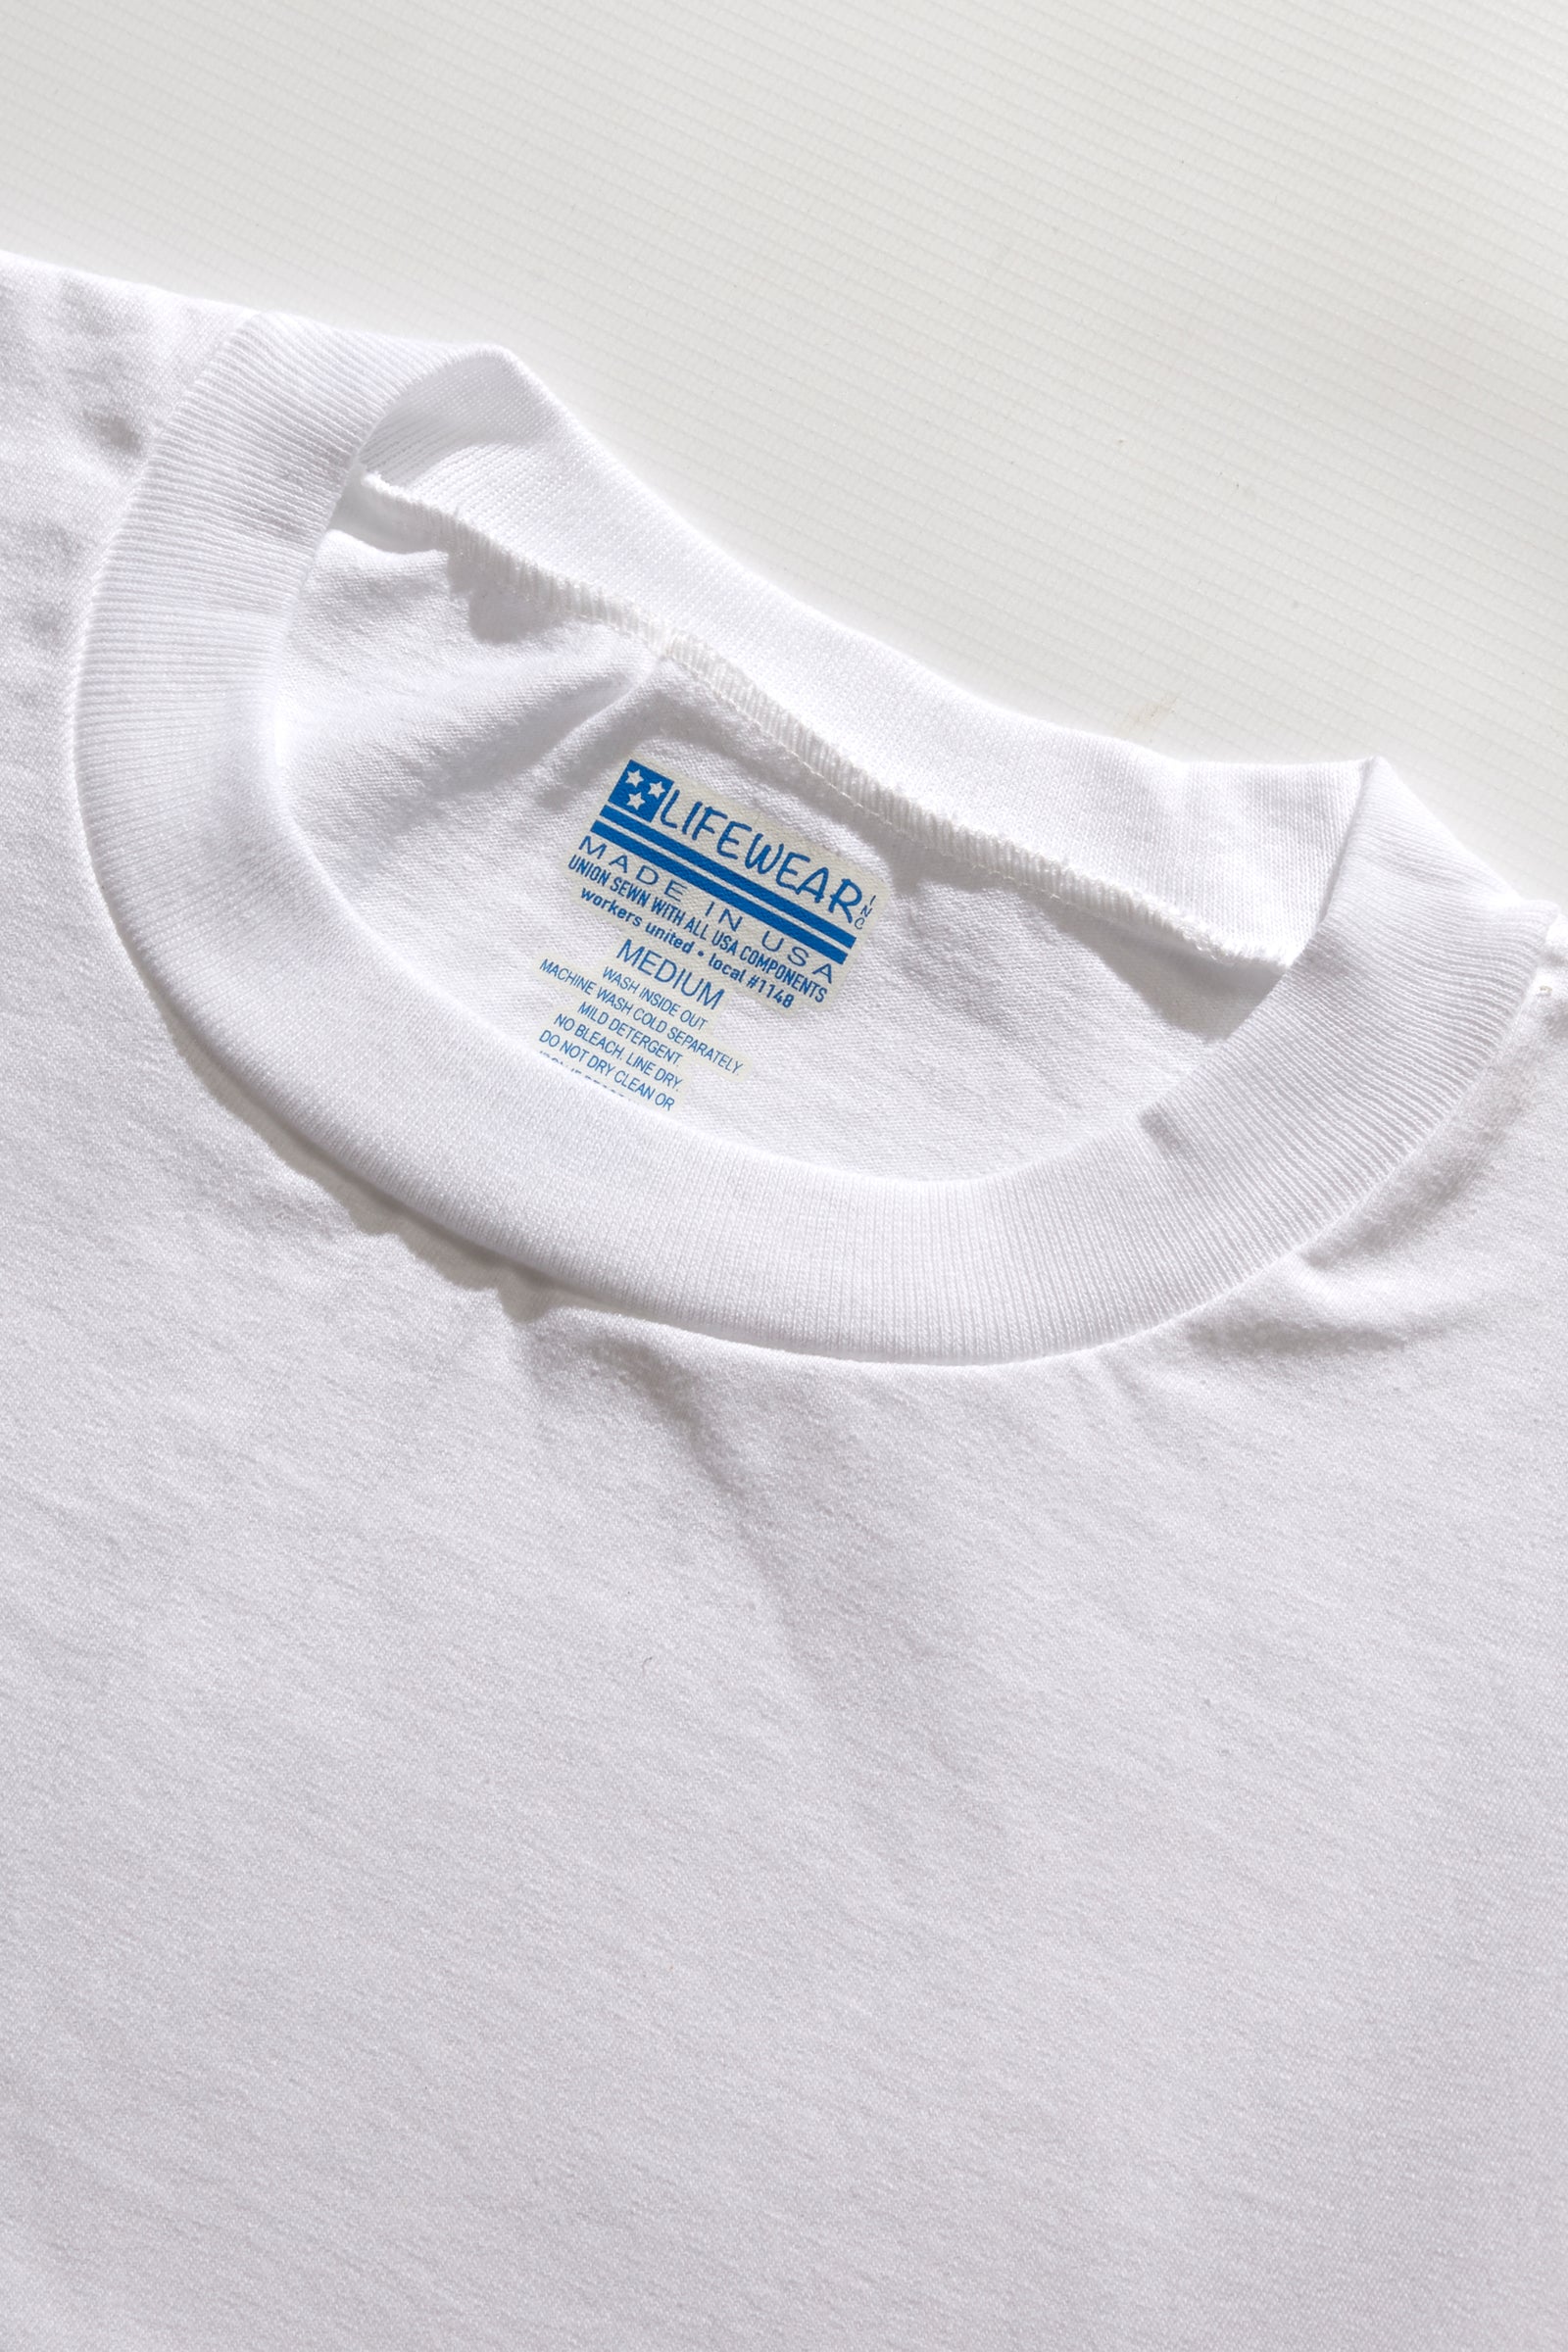 Lifewear USA - 7oz T-Shirt - White | Blacksmith Store